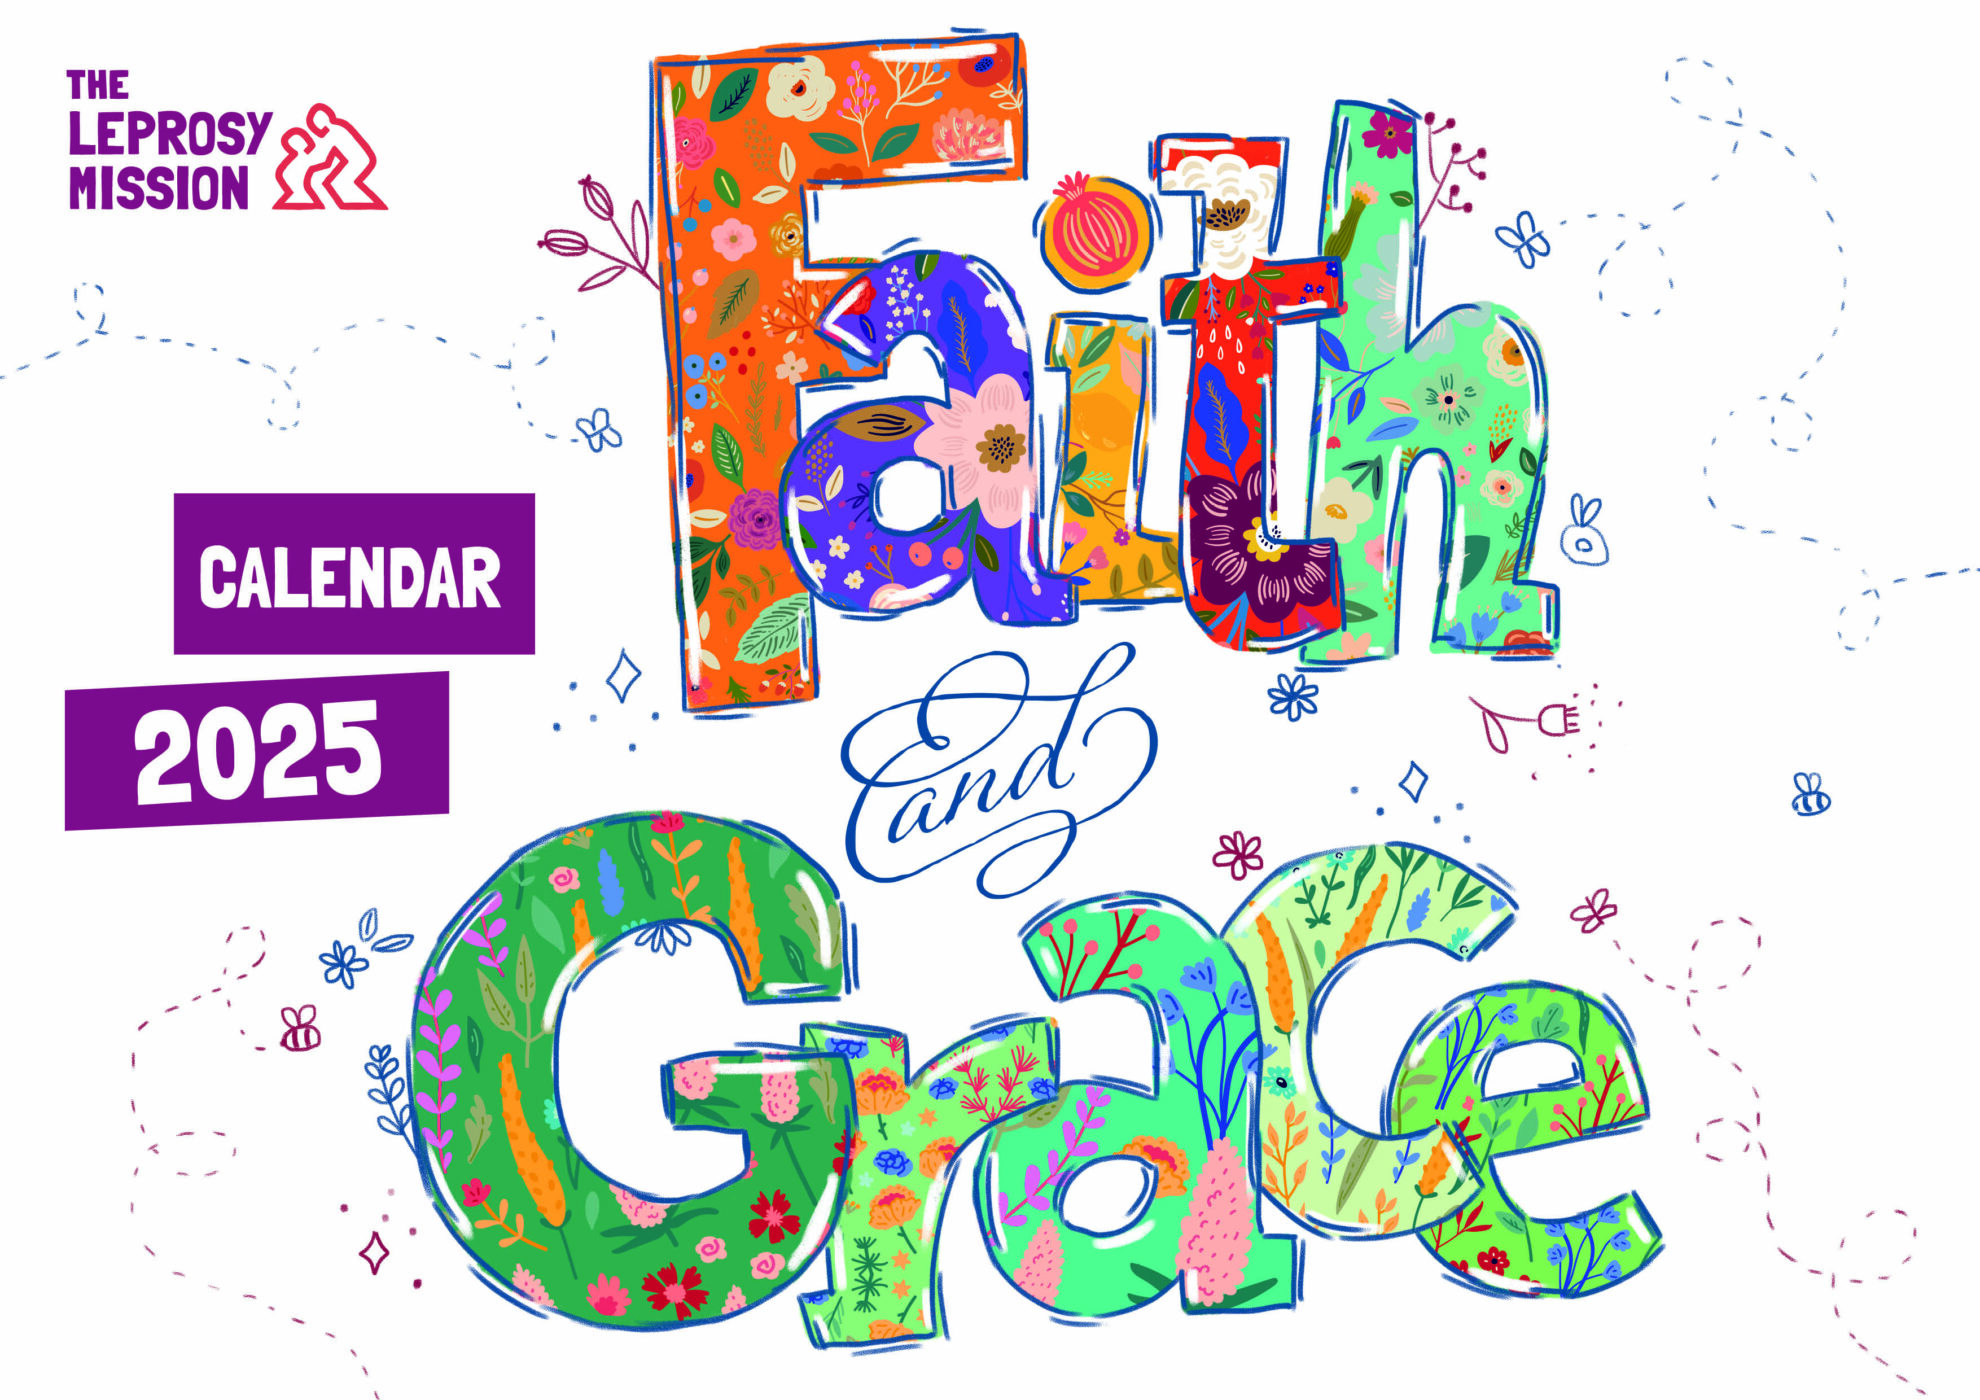 2025 Faith & Grace, Scripture Art Calendar Potters House Limited